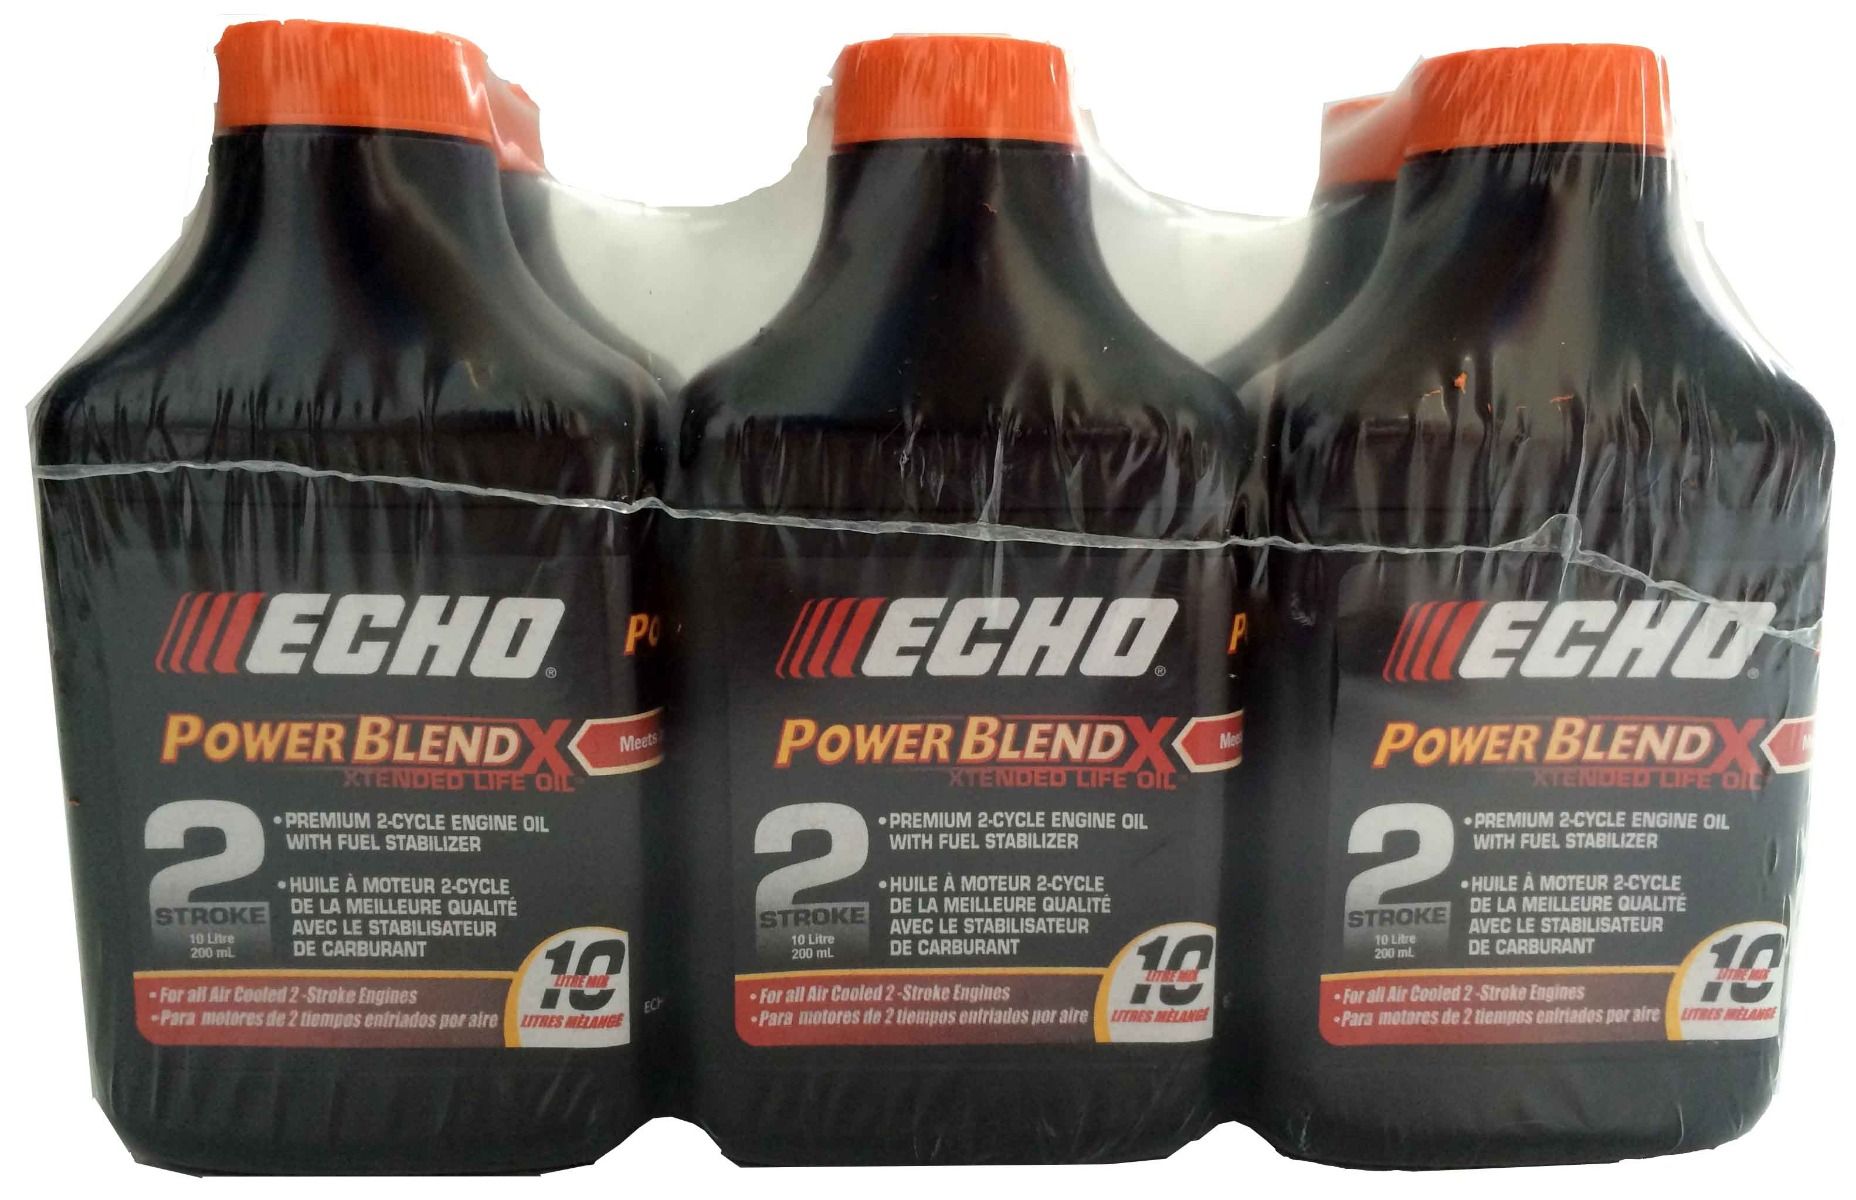 ECHO PowerBlend Premium 2 Cycle Engine Oil 200ml 6 pack